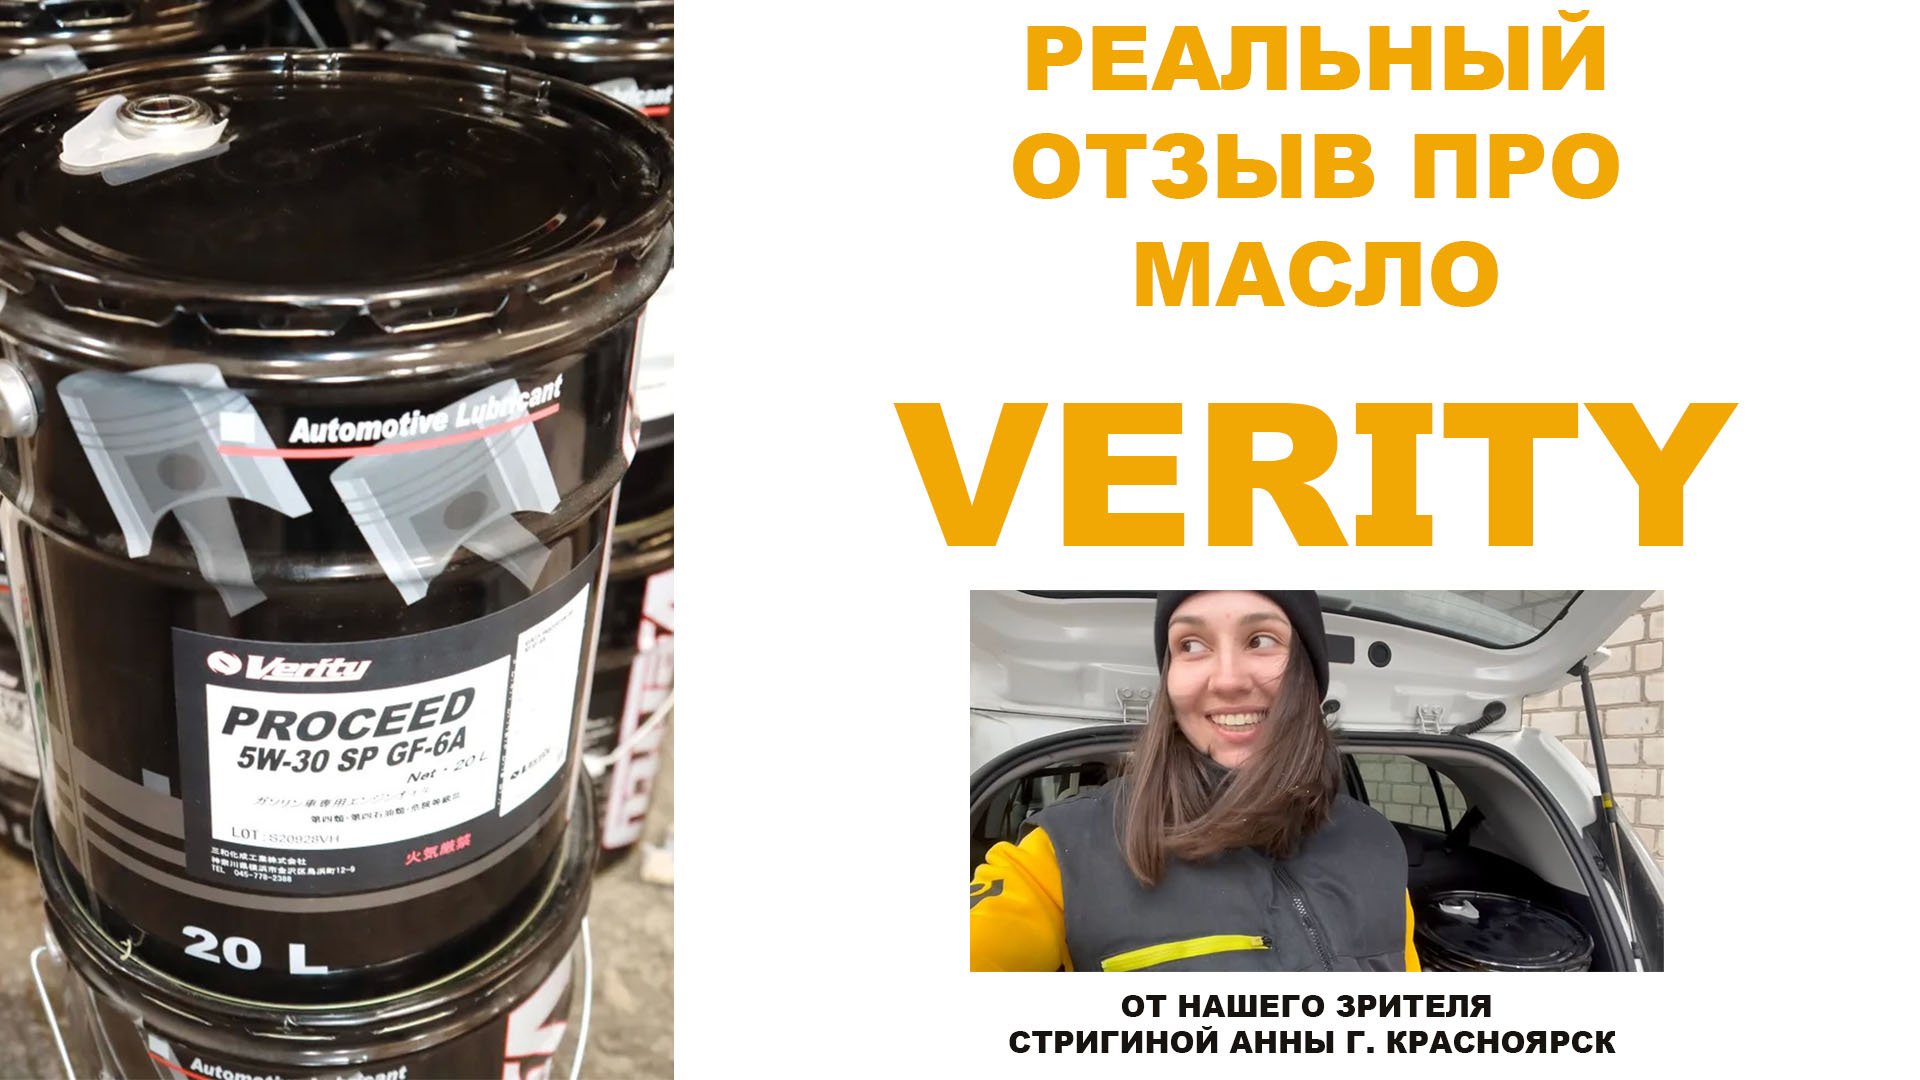 Реальный отзыв про моторное масло VERITY от нашей подписчицы Стригиной Анны г. Красноярск